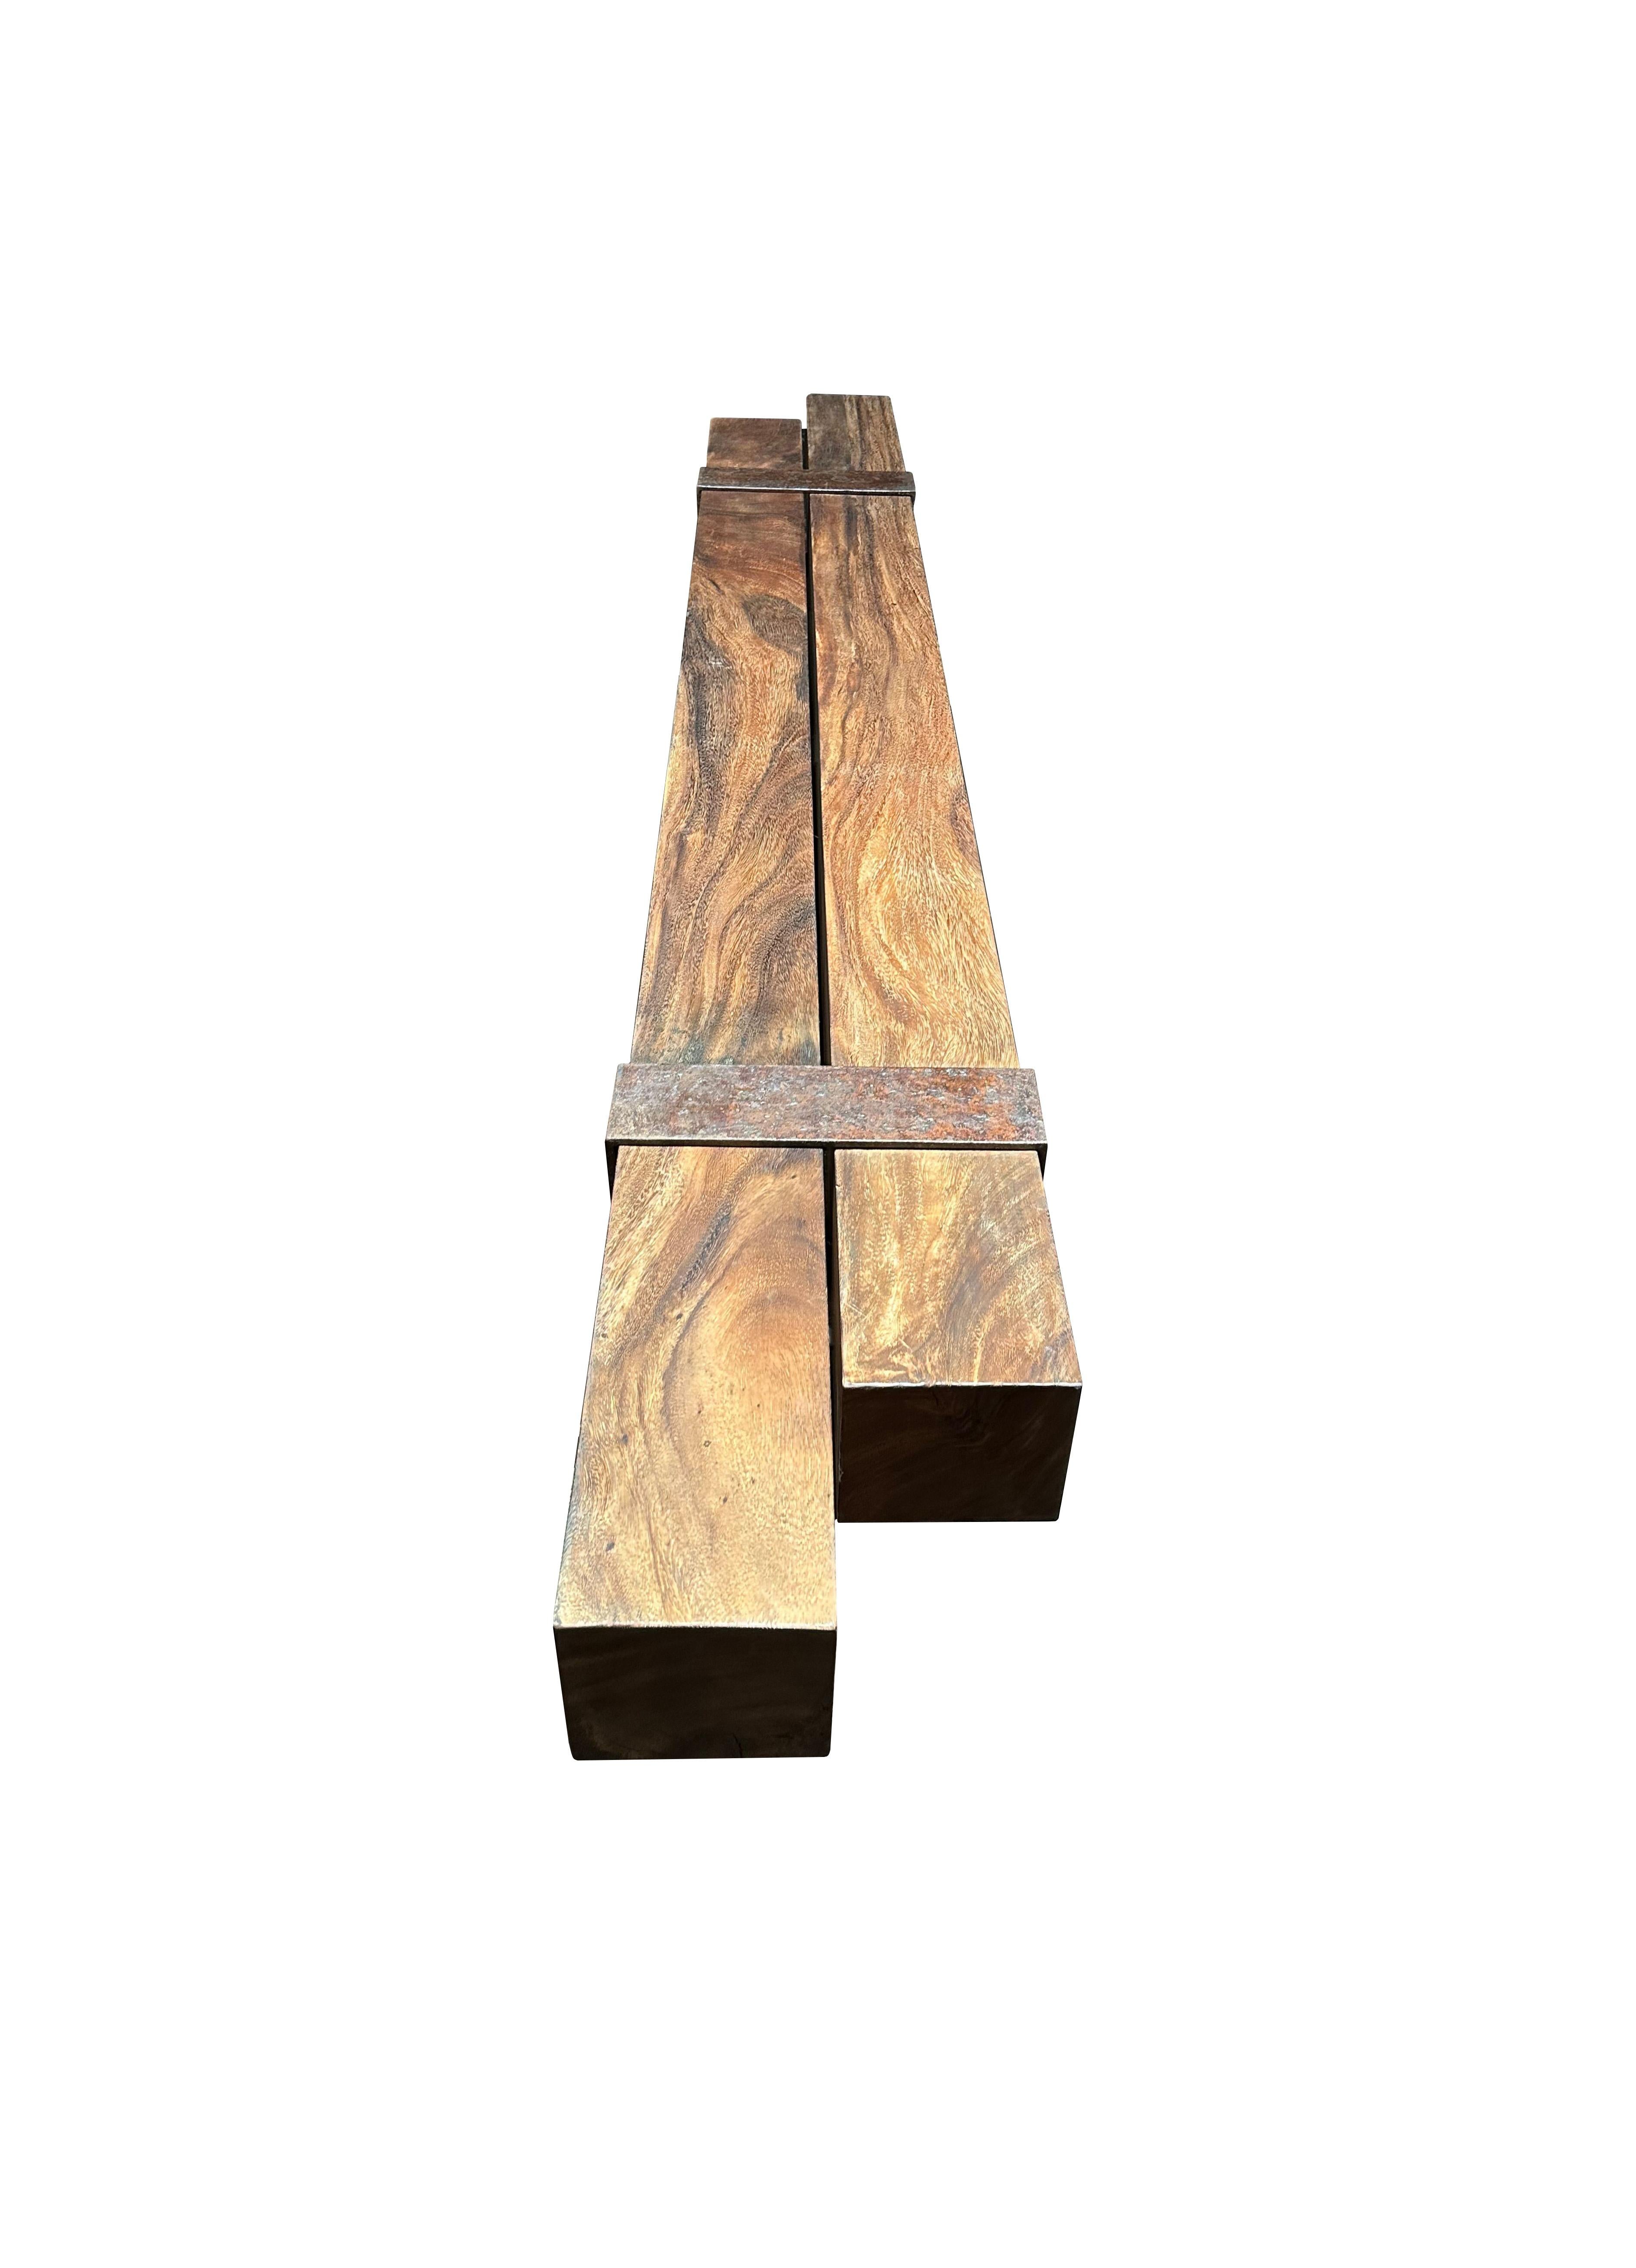 Eine skulpturale Bank aus Suar-Holz, gefertigt aus 2 massiven Suar-Balken, die voneinander abgesetzt sind und von 2 industriellen Stahlbeinen getragen werden. Diese Bank hat eine wunderbare Mischung aus Holztexturen und -tönen. Das perfekte Objekt,